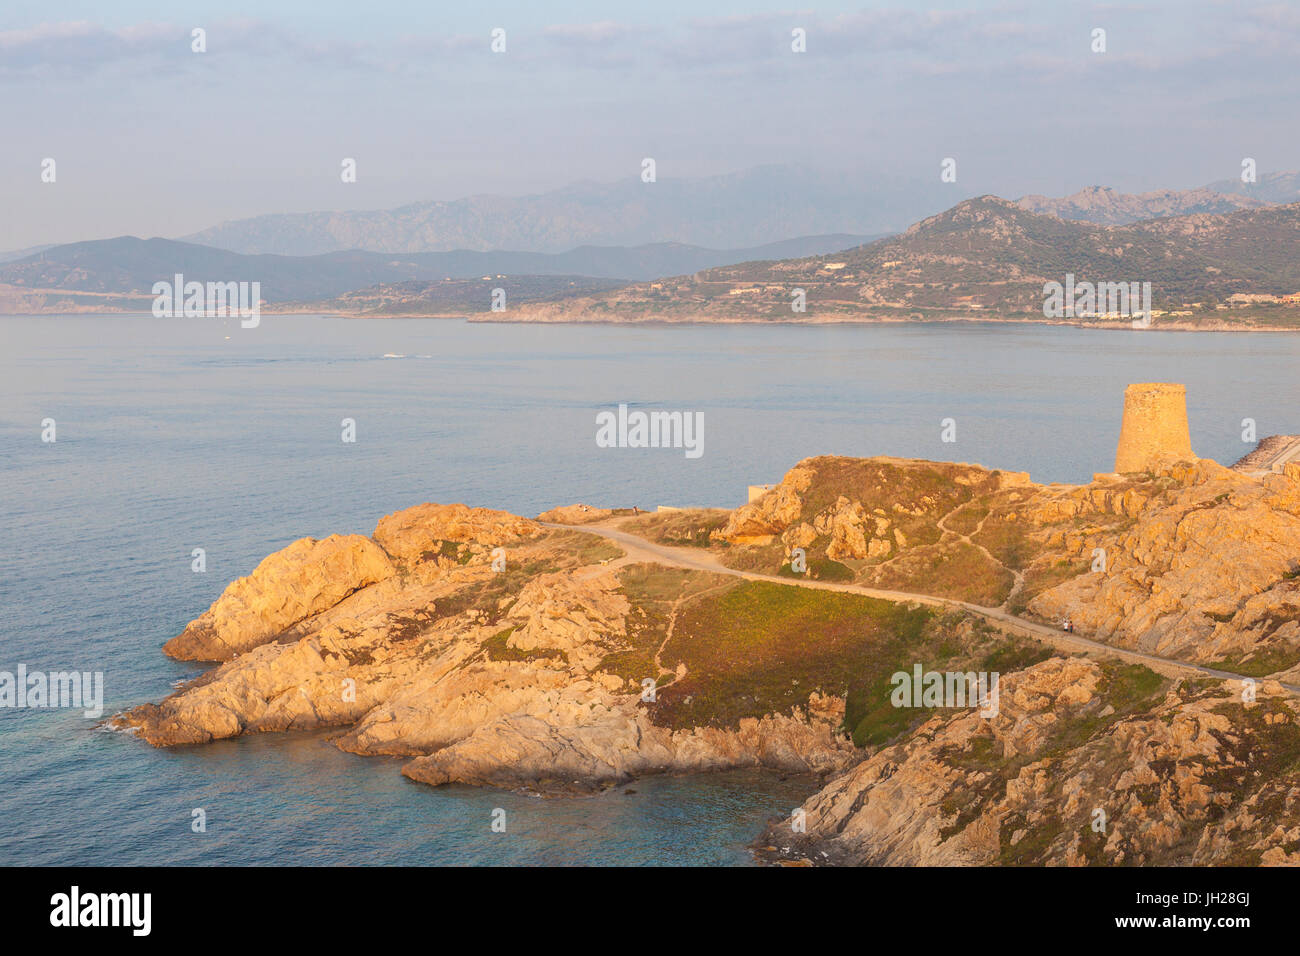 L'ancienne tour génoise surplombant la mer qui entoure le village d'Ile Rousse, Balagne, Corse, France Banque D'Images